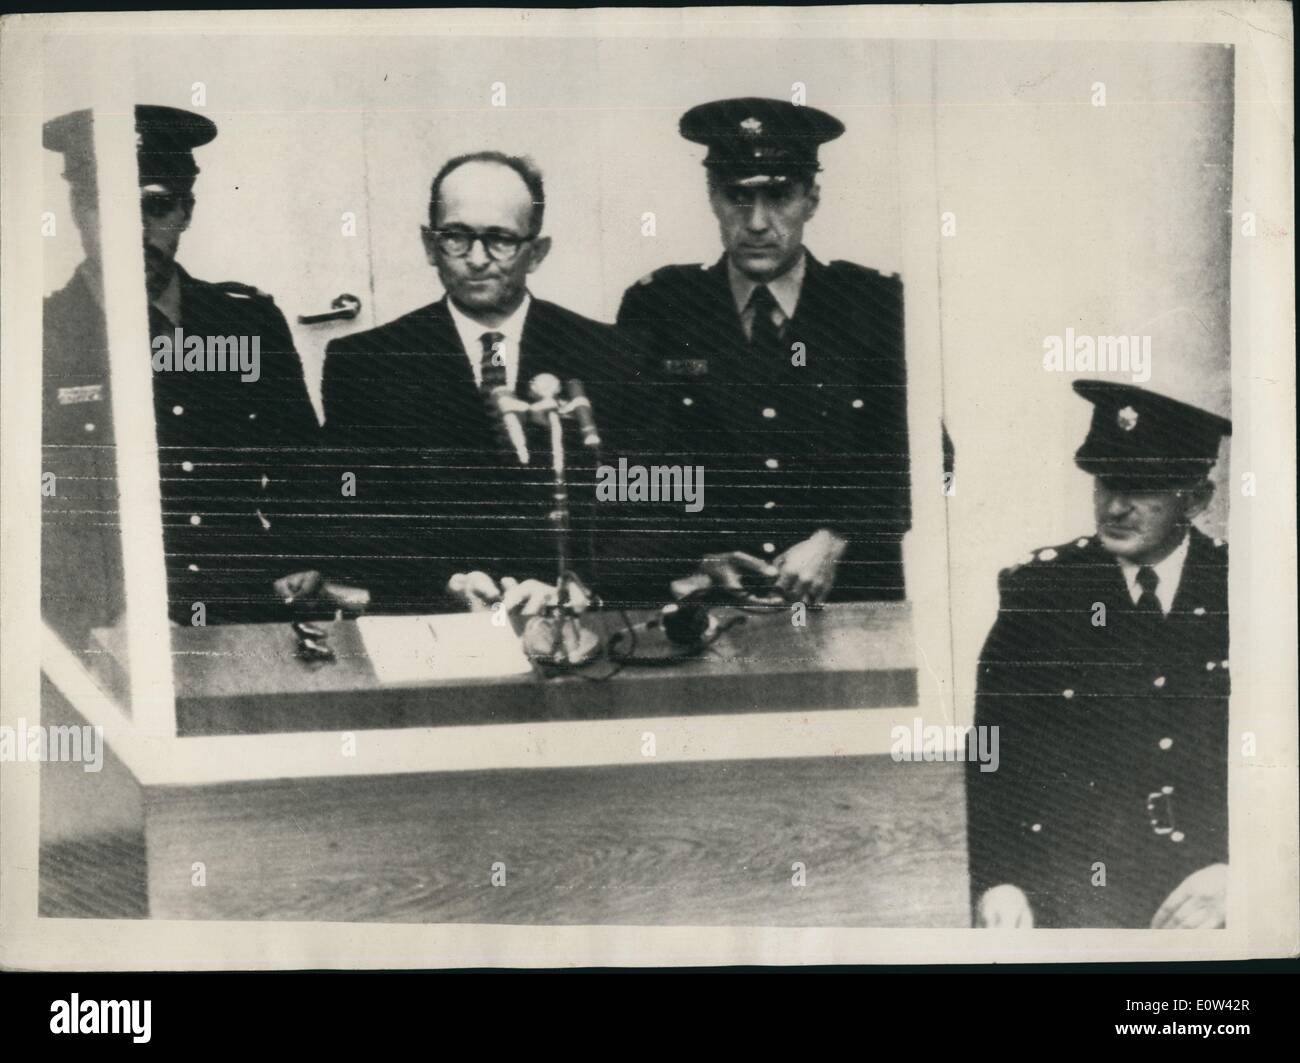 Apr. 04, 1961 - Apertura di Adolf Eichmann trial in Gerusalemme. Caricato con omicidi di massa degli ebrei: la versione di prova ha aperto questa mattina a Gerusalemme di Adolf Eichmann ex Nazi S.S. Il colonnello sulle cariche di mann uccisione di milioni di ebrei nei campi di concentramento durante la guerra. La foto mostra ben custodito con un poliziotto su entrambi i lati di lui Adolf Eichmann visto nel suo speciale a prova di proiettile dock in apertura del suo processo di Gerusalemme questa mattina. Foto Stock